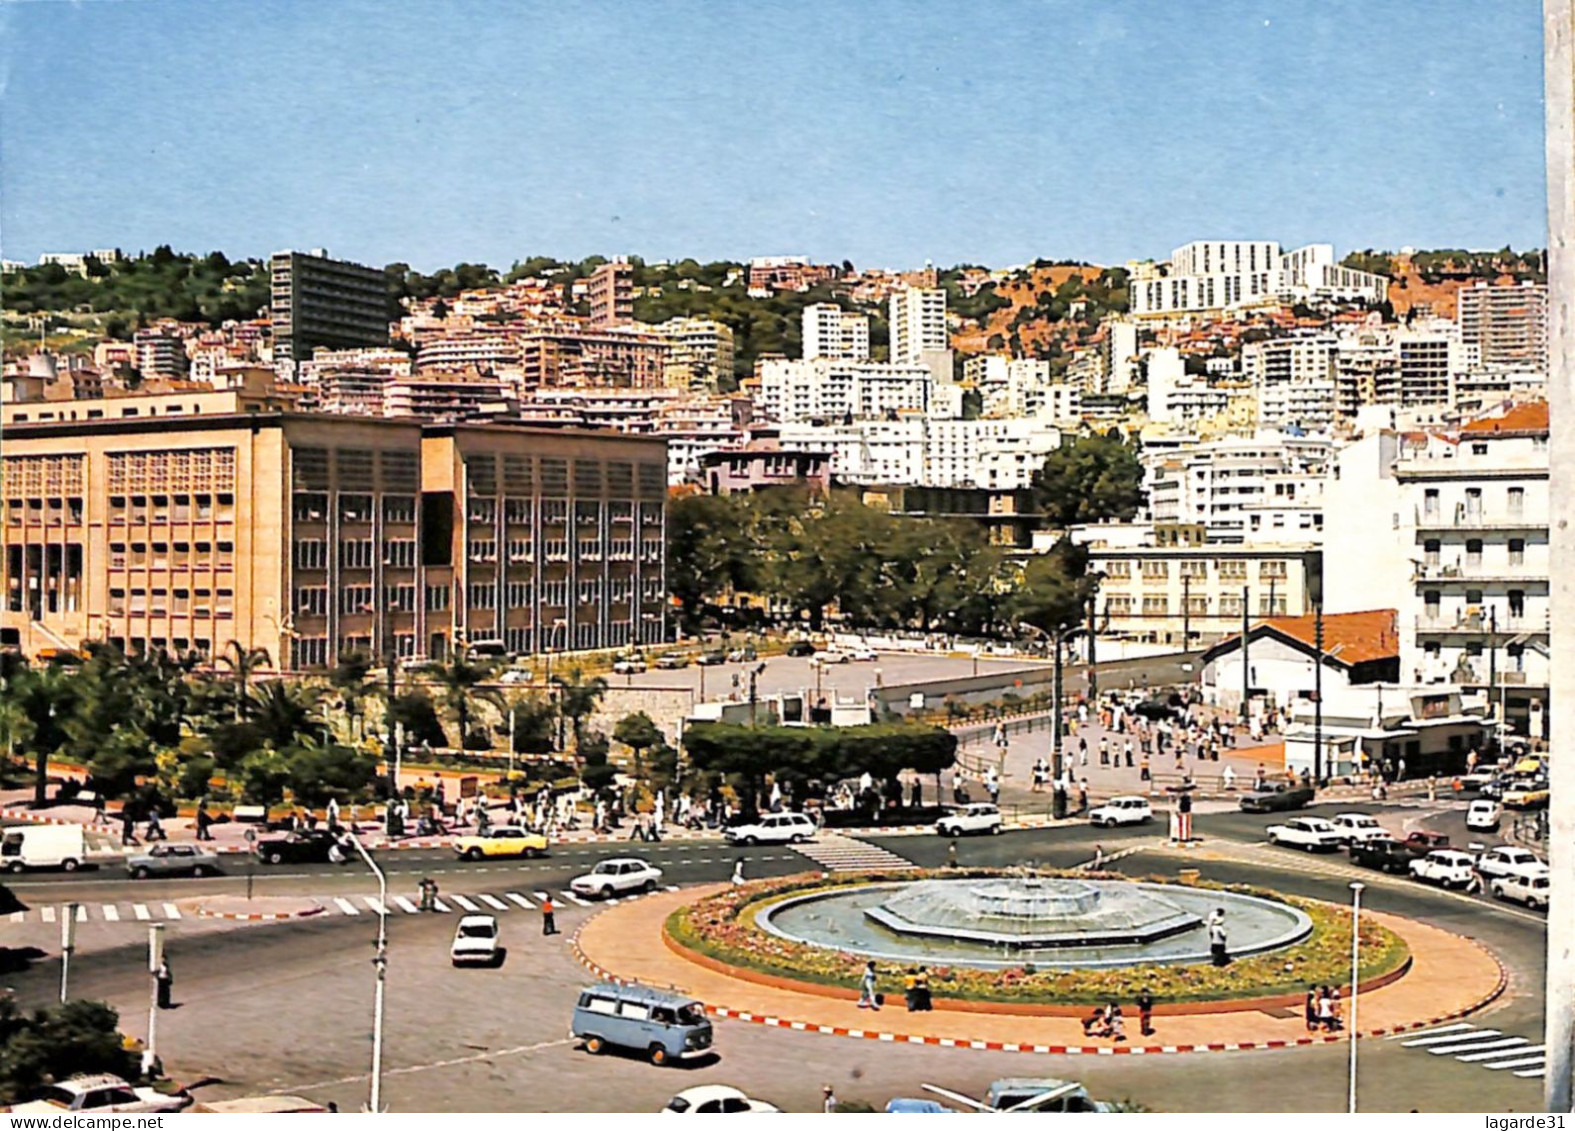 algérie lot de 26 cartes toutes scannées